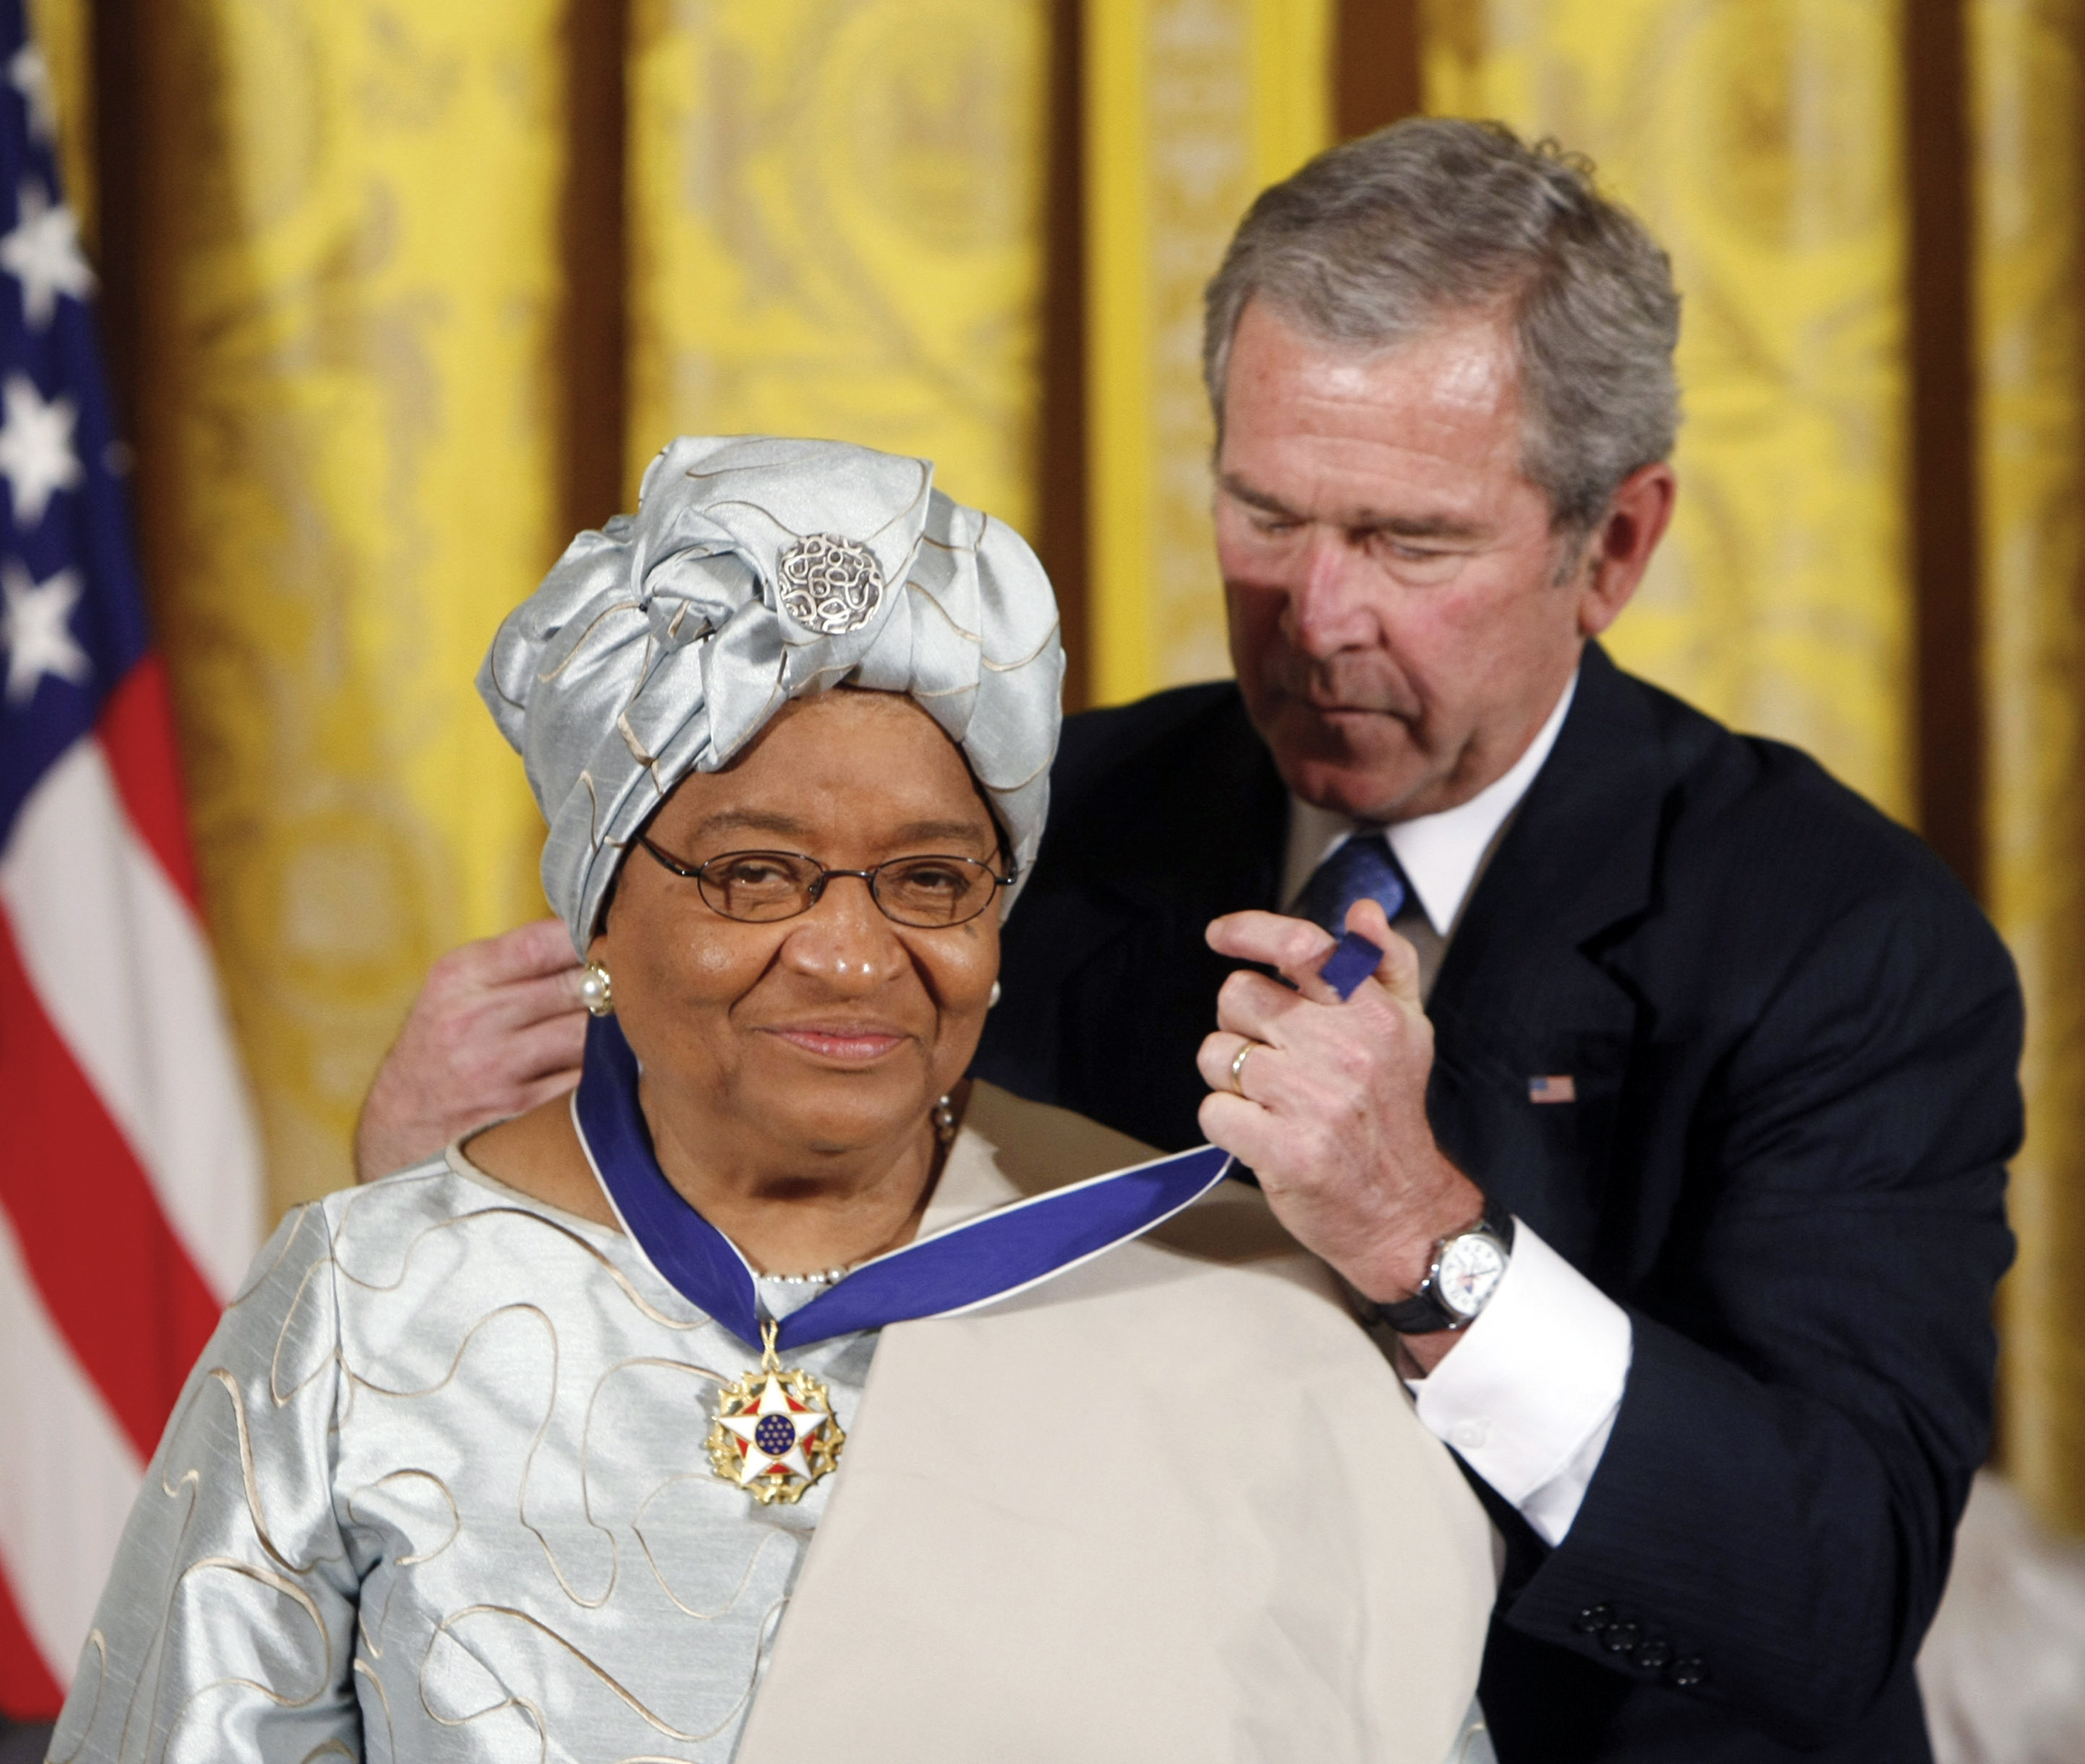 U.S 조지 부시 대통령은 2005 년 백악관 행사에서 라이베리아 대통령 엘렌 존슨 서리 프에게 대통령 자유 메달을 선물한다. (AP 이미지/제럴드 Herbert)